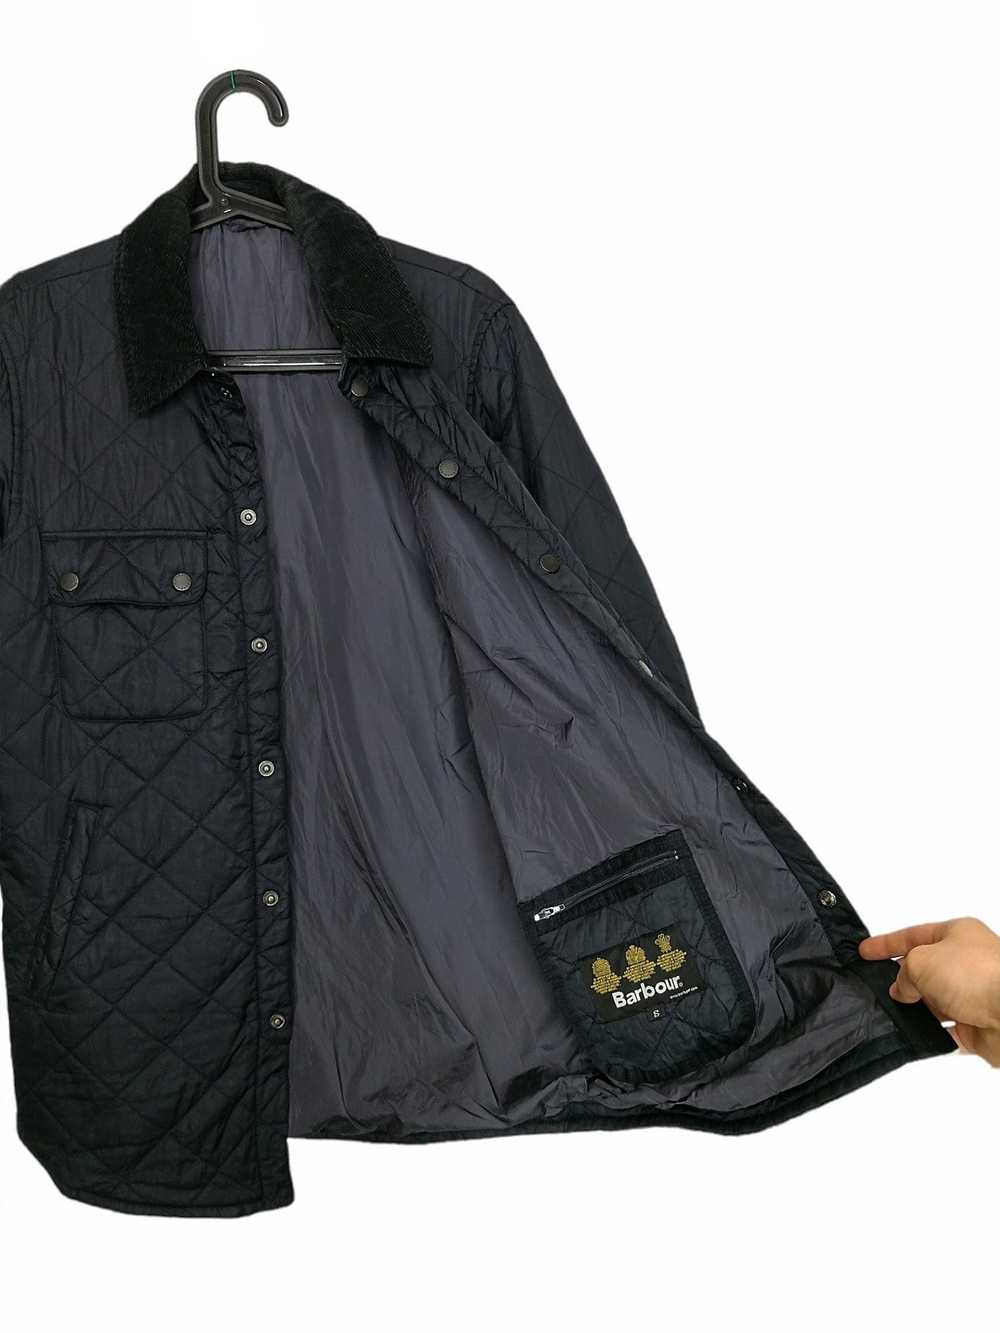 Barbour Barbour Quilt Jacket Akenside Black - image 12